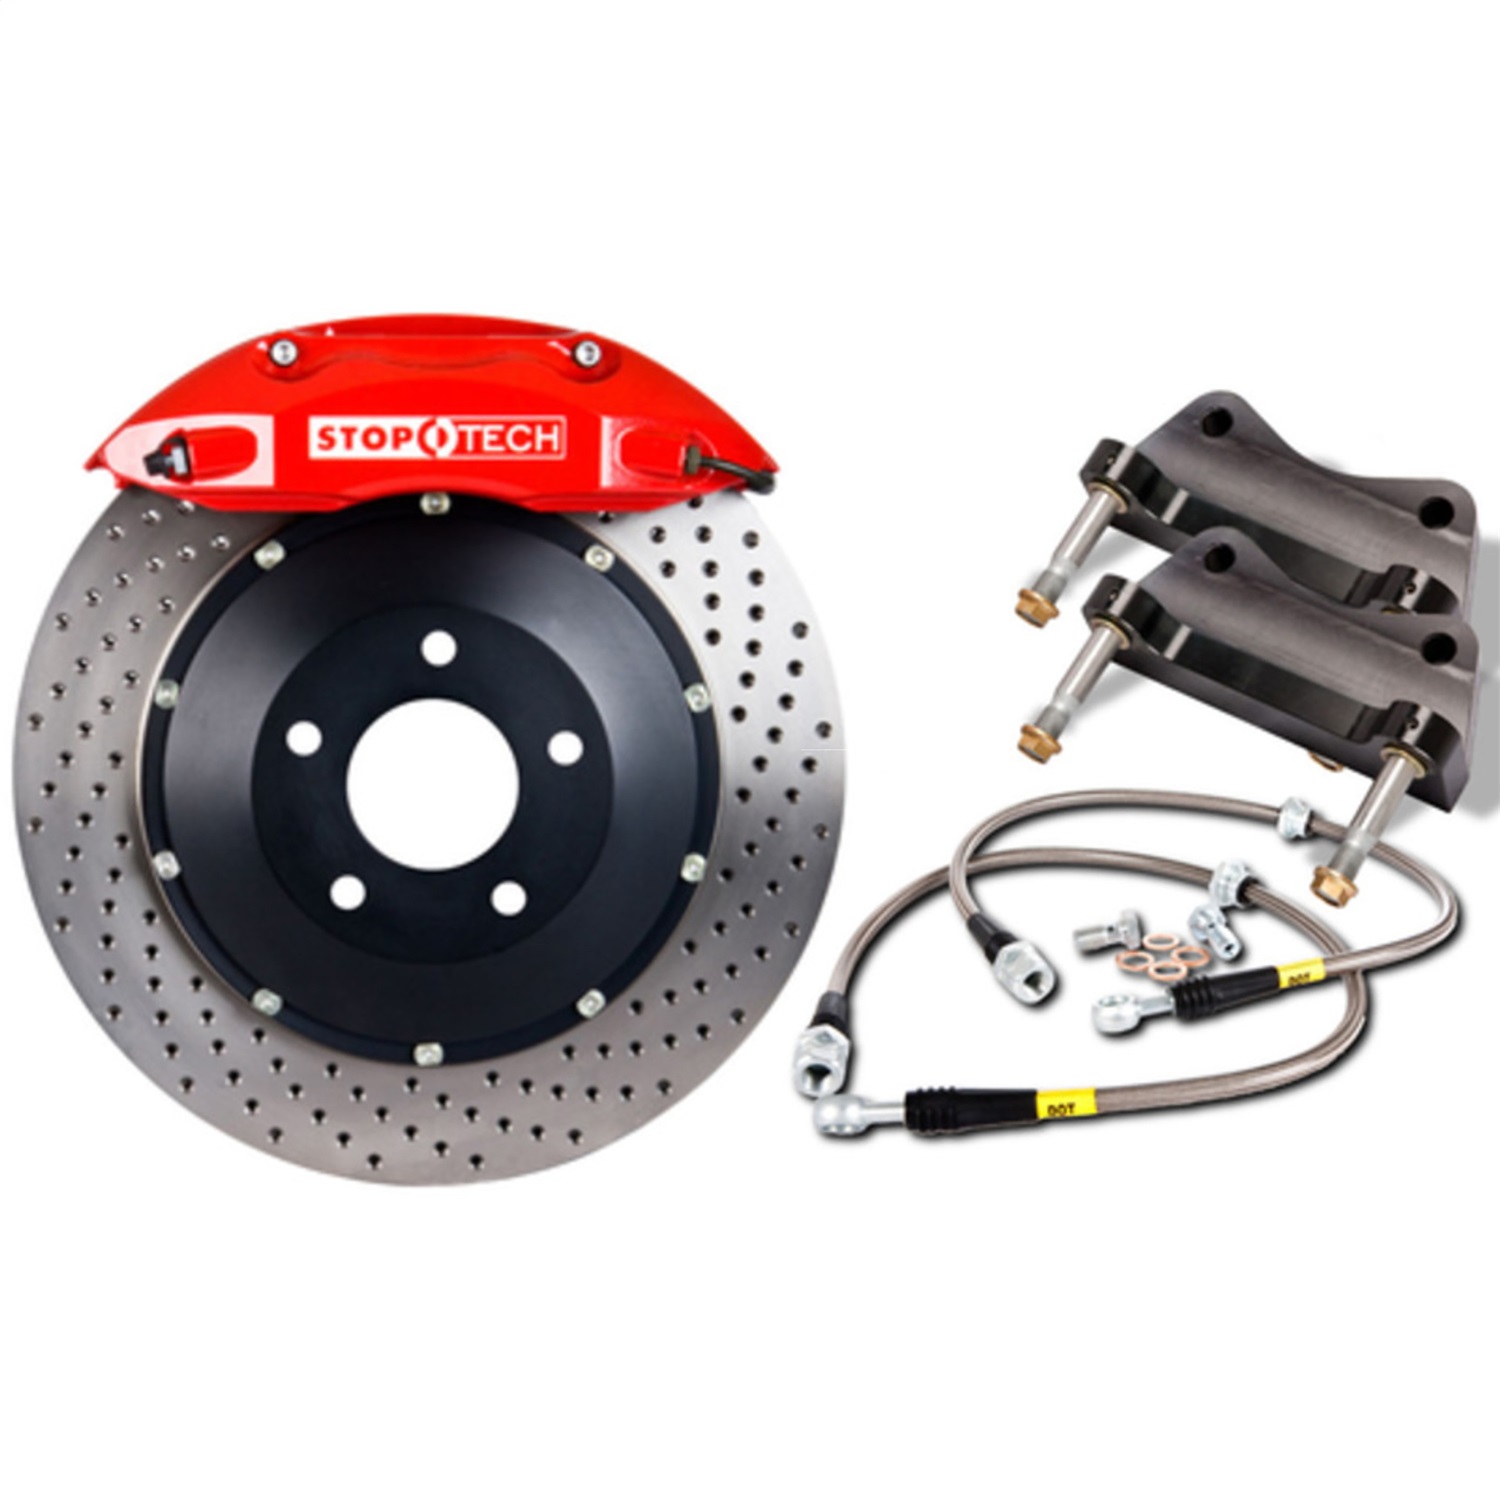 StopTech 83.856.4700.72 Big Brake Kit w/2 Piece Rotors